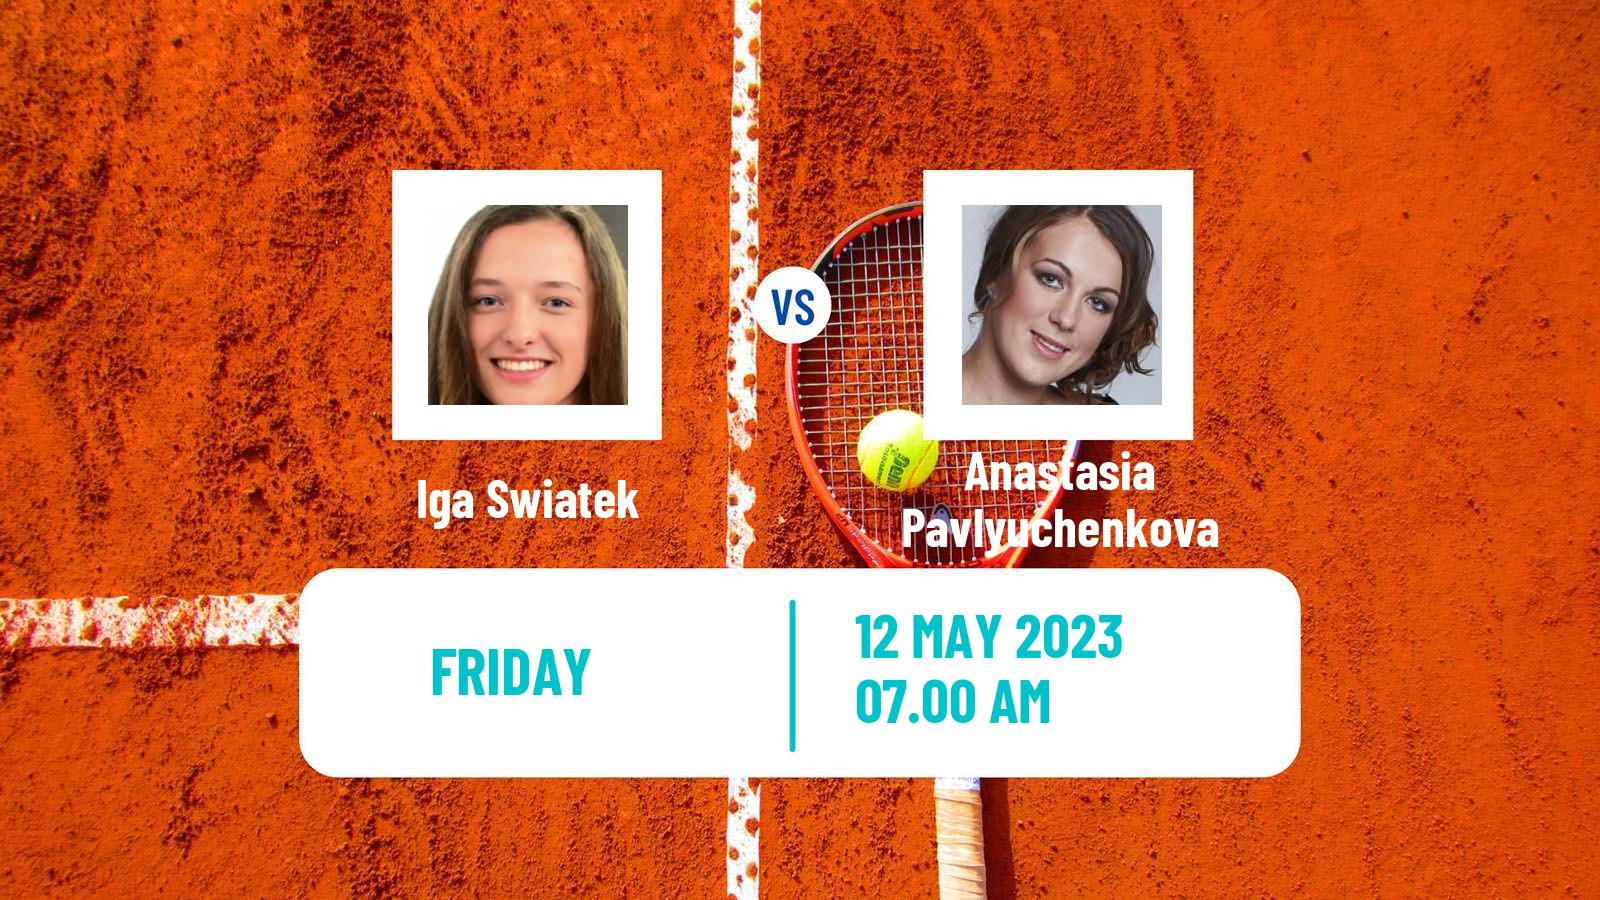 Tennis WTA Roma Iga Swiatek - Anastasia Pavlyuchenkova